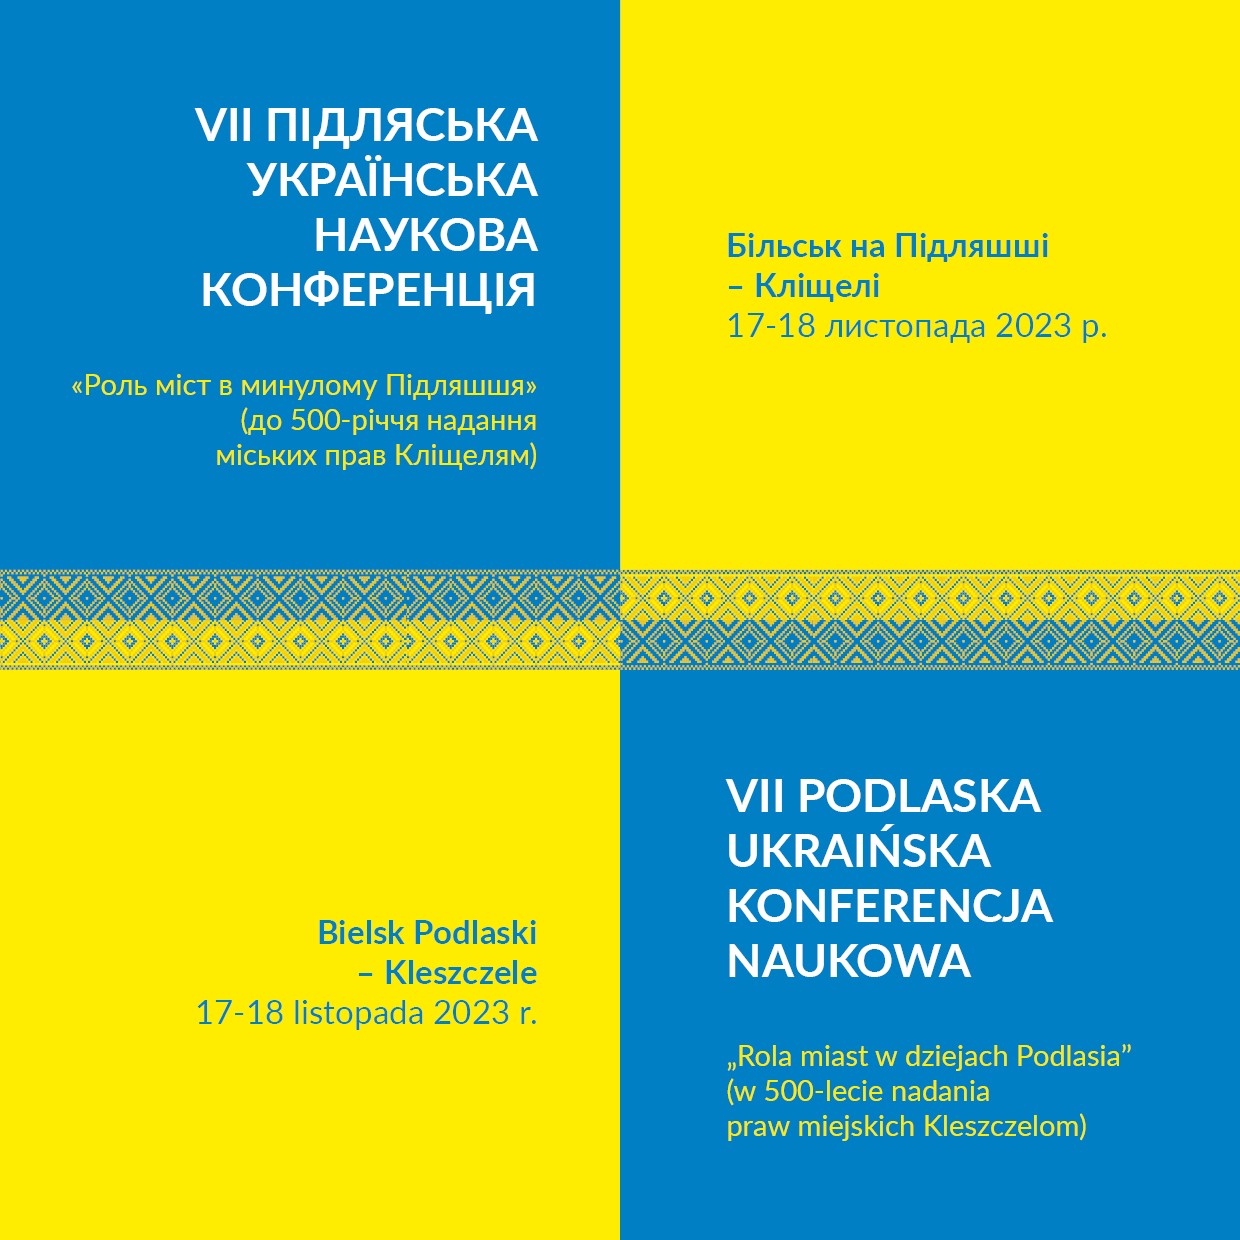 Już za miesiąc VII Podlaska Ukraińska Konferencja Naukowa „Rola miast w dziejach Podlasia”(w 500-lecie nadania praw miejskich Kleszczelom)